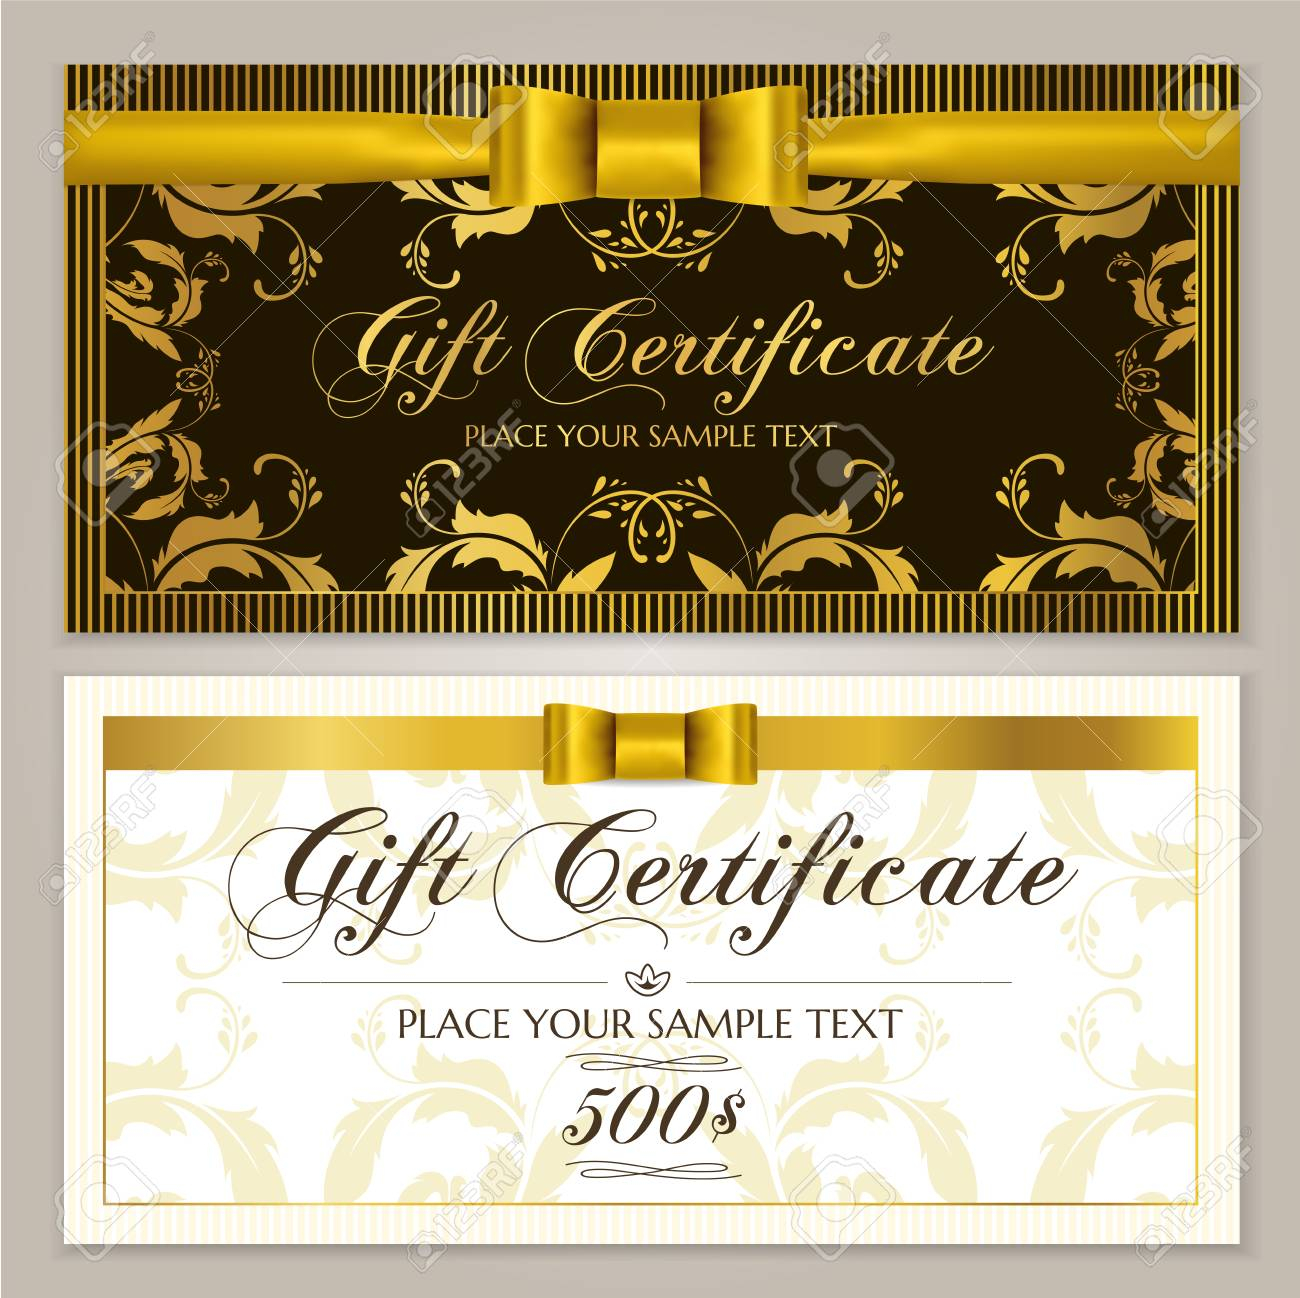 Geschenkgutscheinvorlage (geschenkgutscheinlayout  With Restaurant Gift Certificate Template